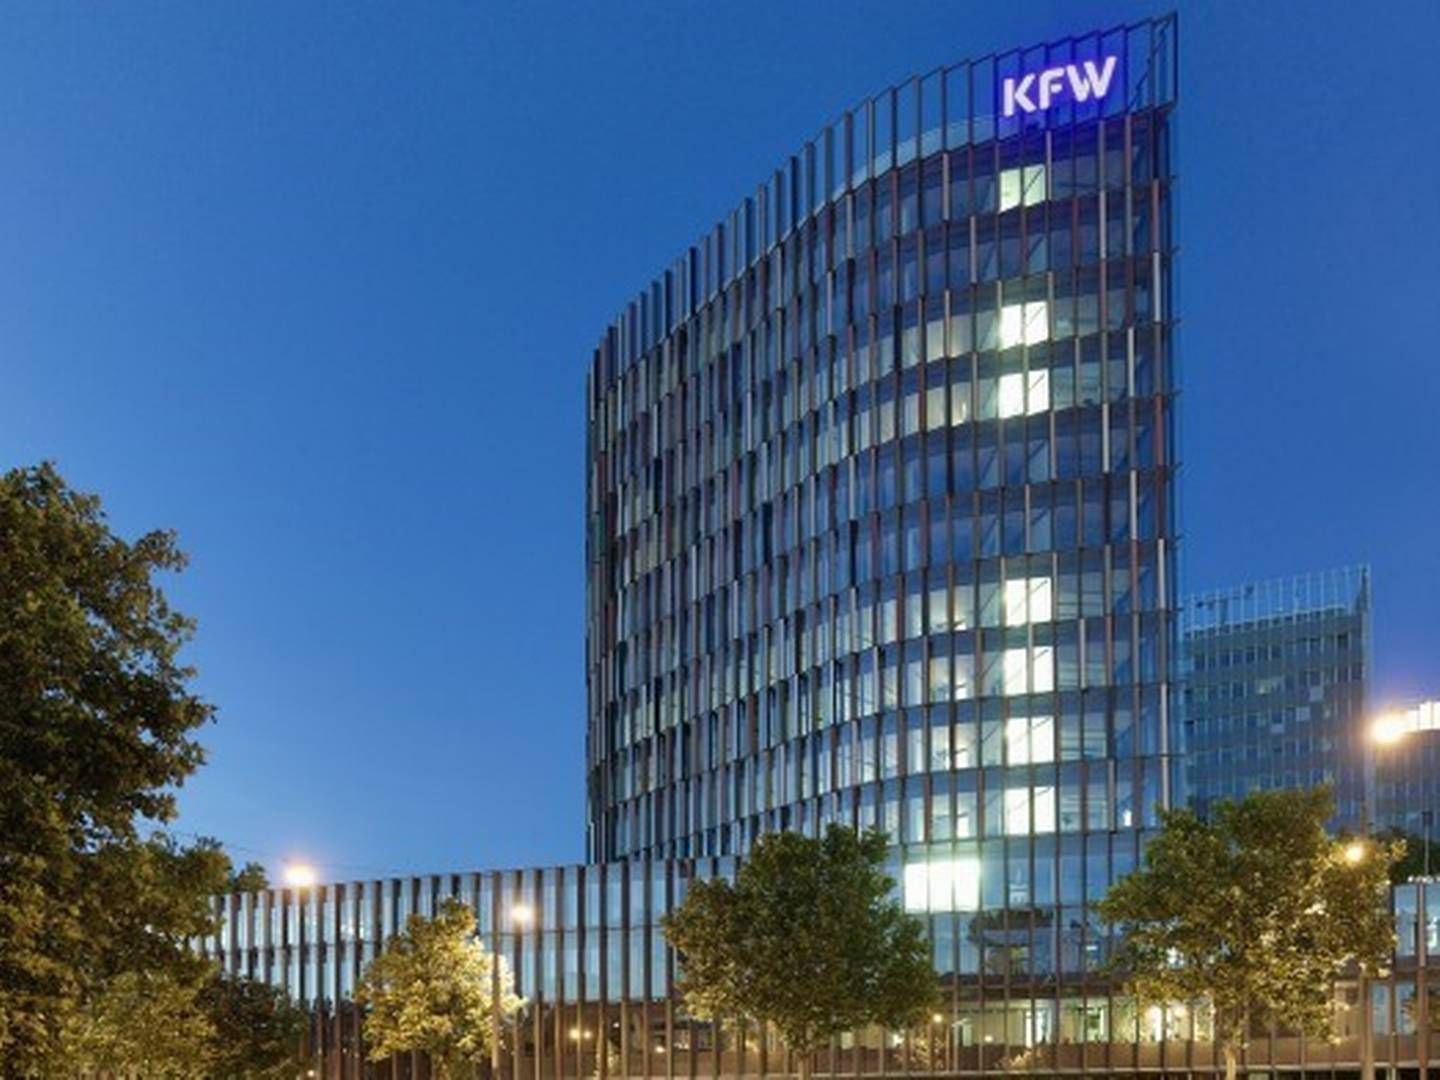 KfW-Zentrale in Frankfurt | Foto: KfW